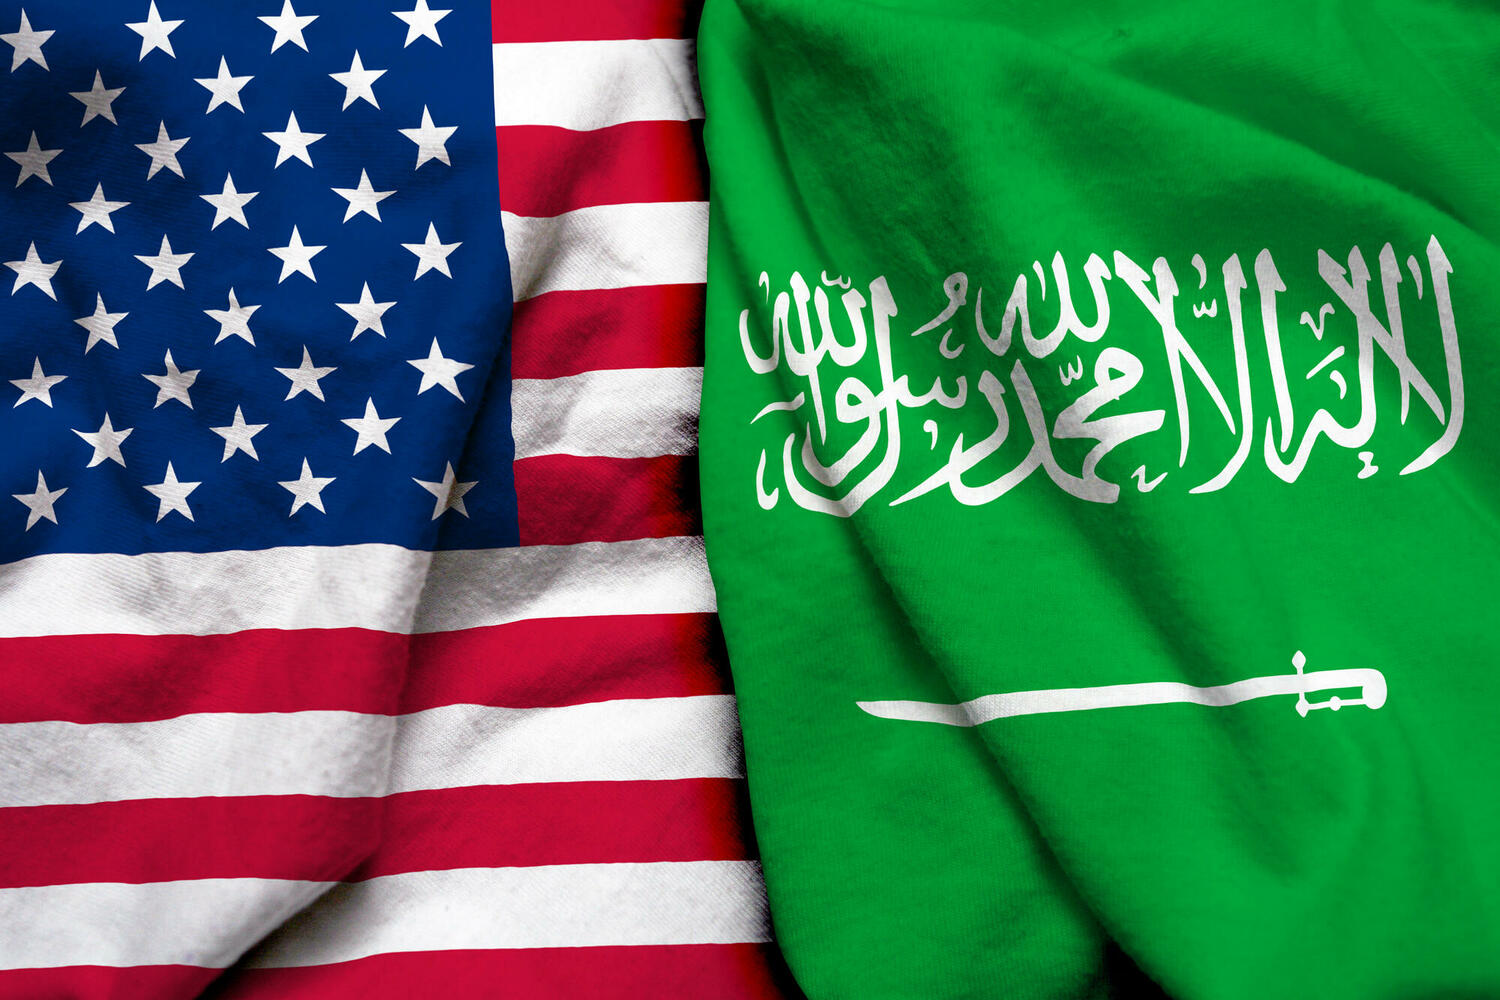  США пытаются продвинуть нормализацию между Израилем и Саудовской Аравией 